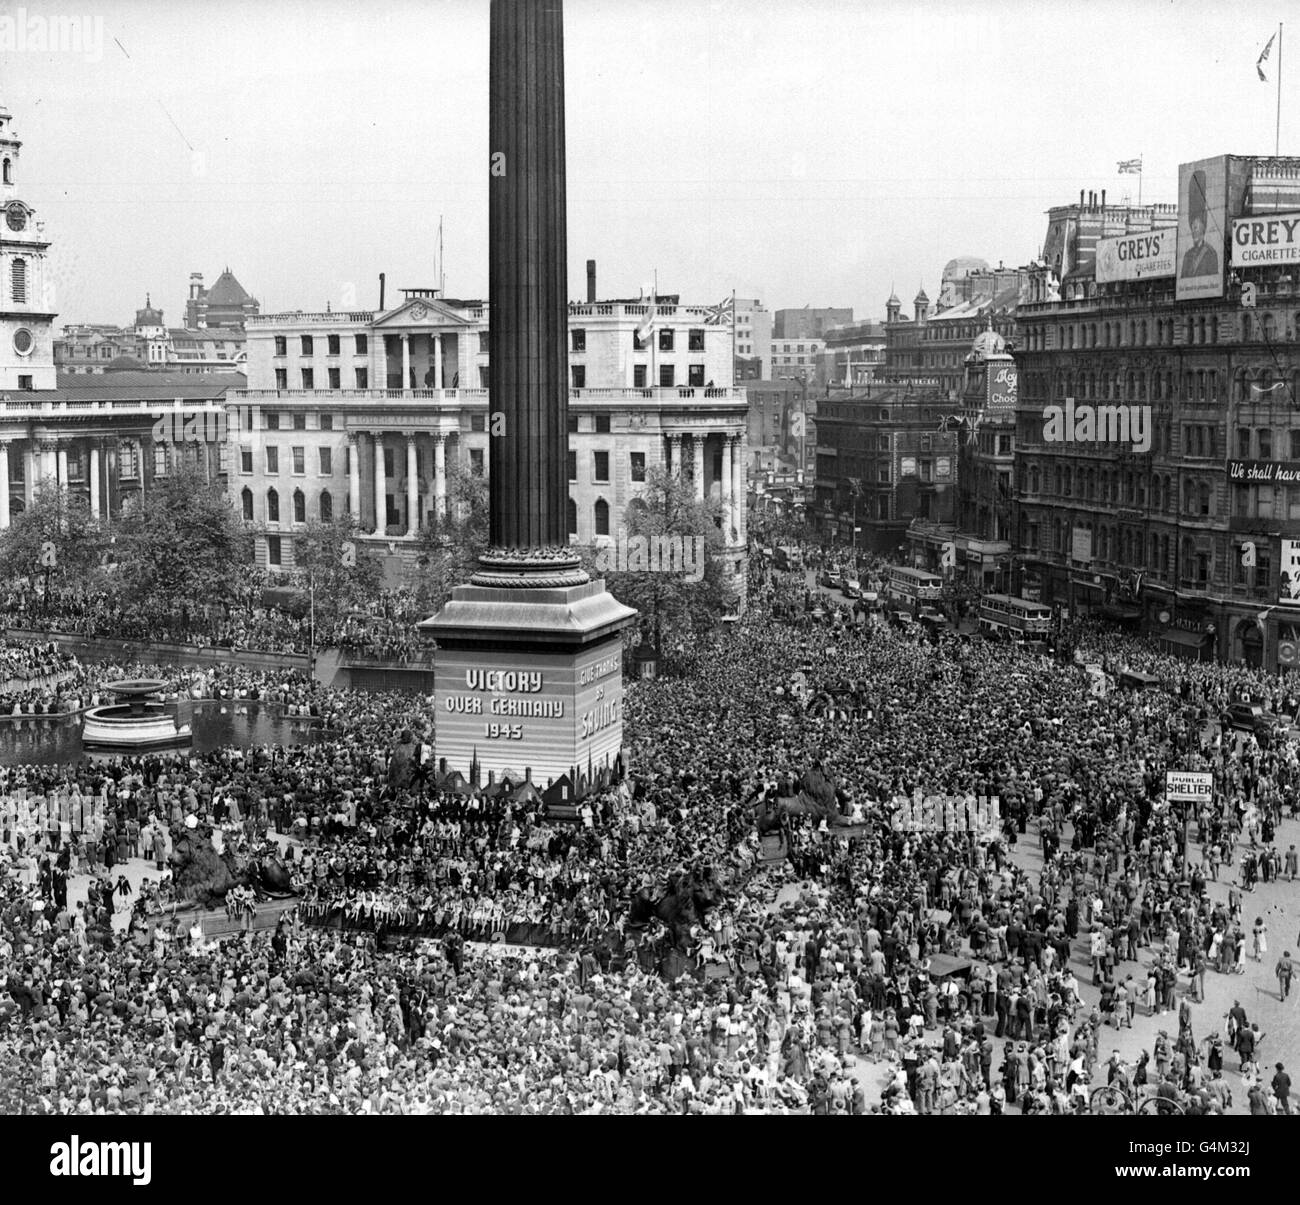 Tausende von Menschen versammeln sich zum VE-Day in Trafalgar Sqaure, London, um den Sieg der Alliierten über Deutschland und das Ende des Zweiten Weltkriegs zu feiern. Stockfoto